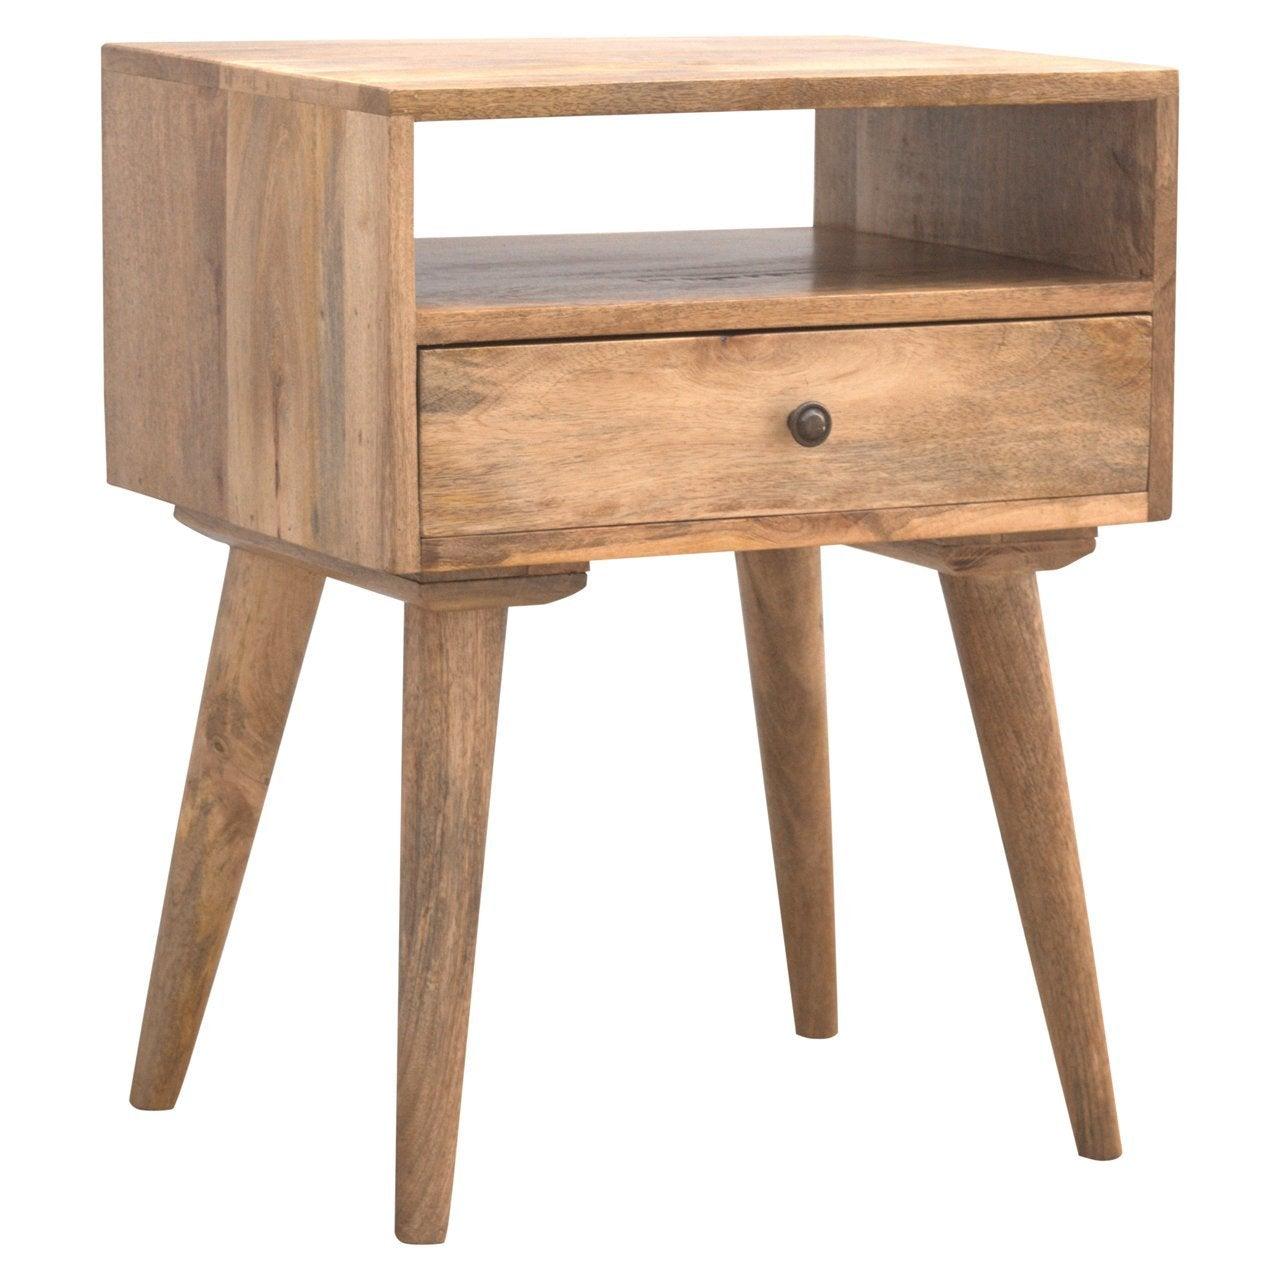 Modern solid wood bedside table with open slot - crimblefest furniture - image 4